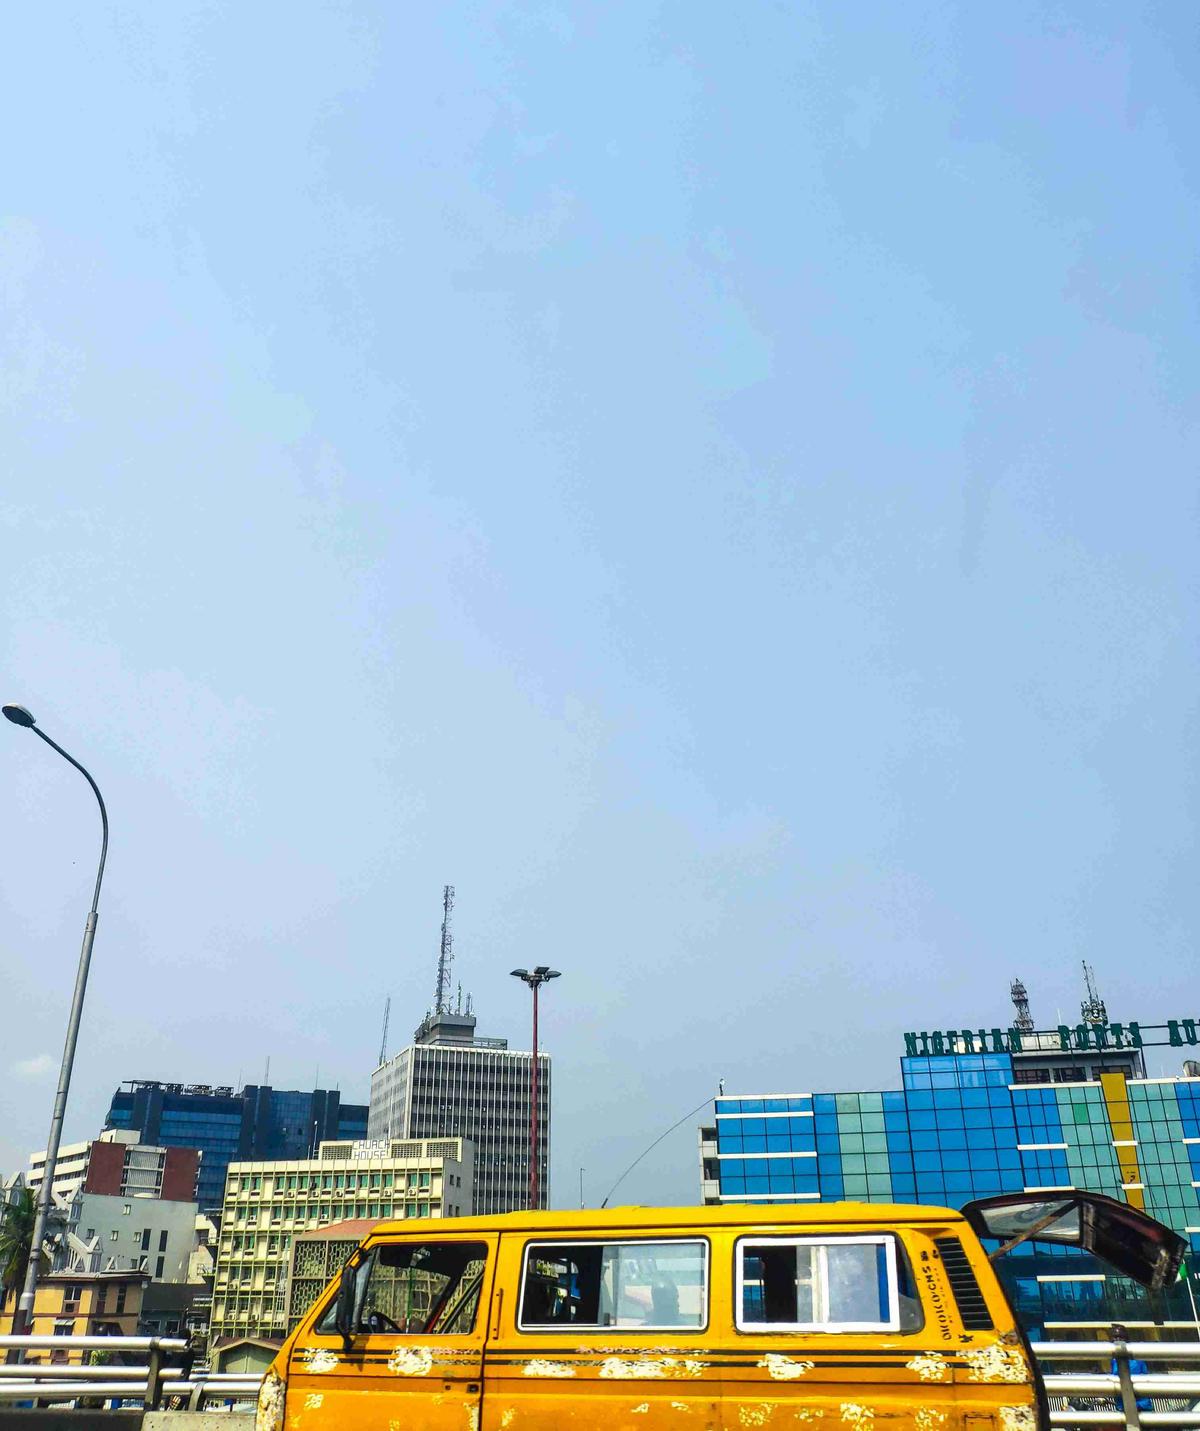 Autobús amarillo en paisaje urbano con edificios modernos contra el cielo claro